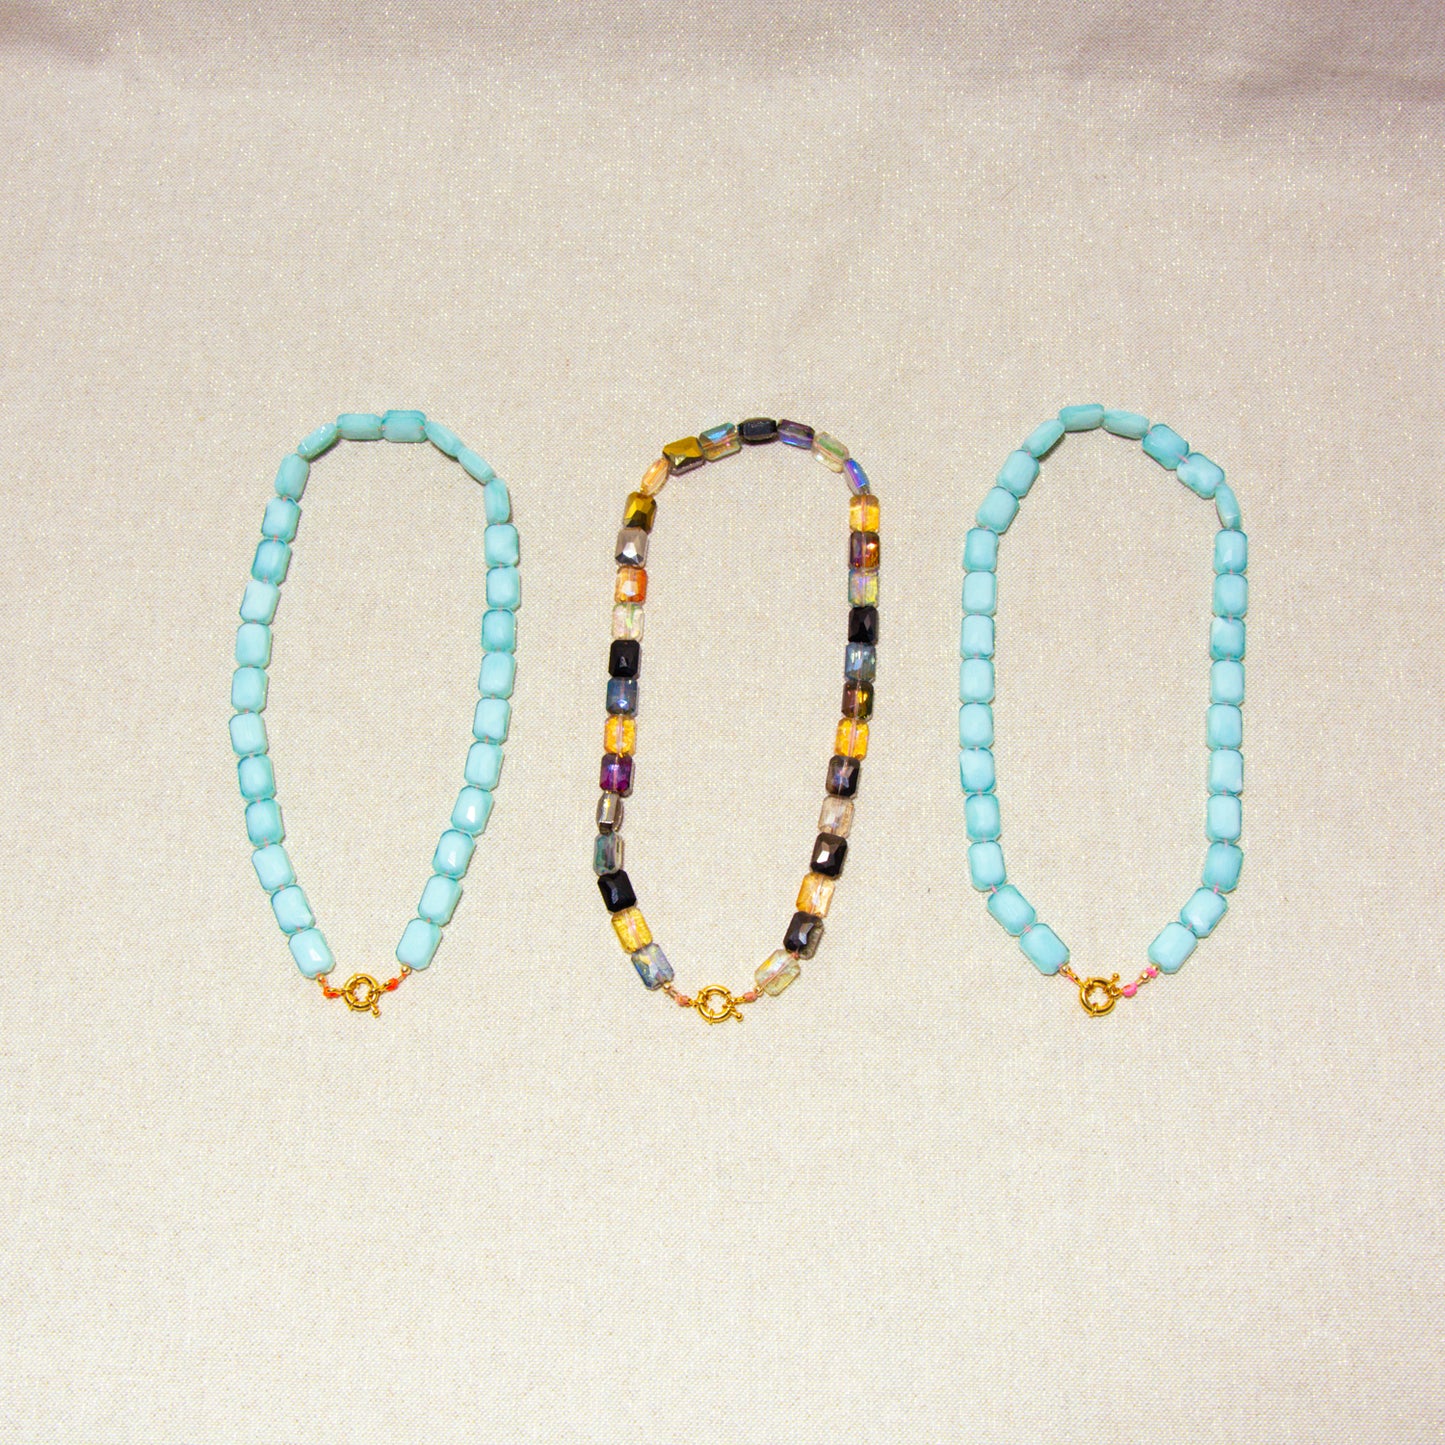 Colliers - Perles de Verre Bleu - Cordon brésilien Fluo